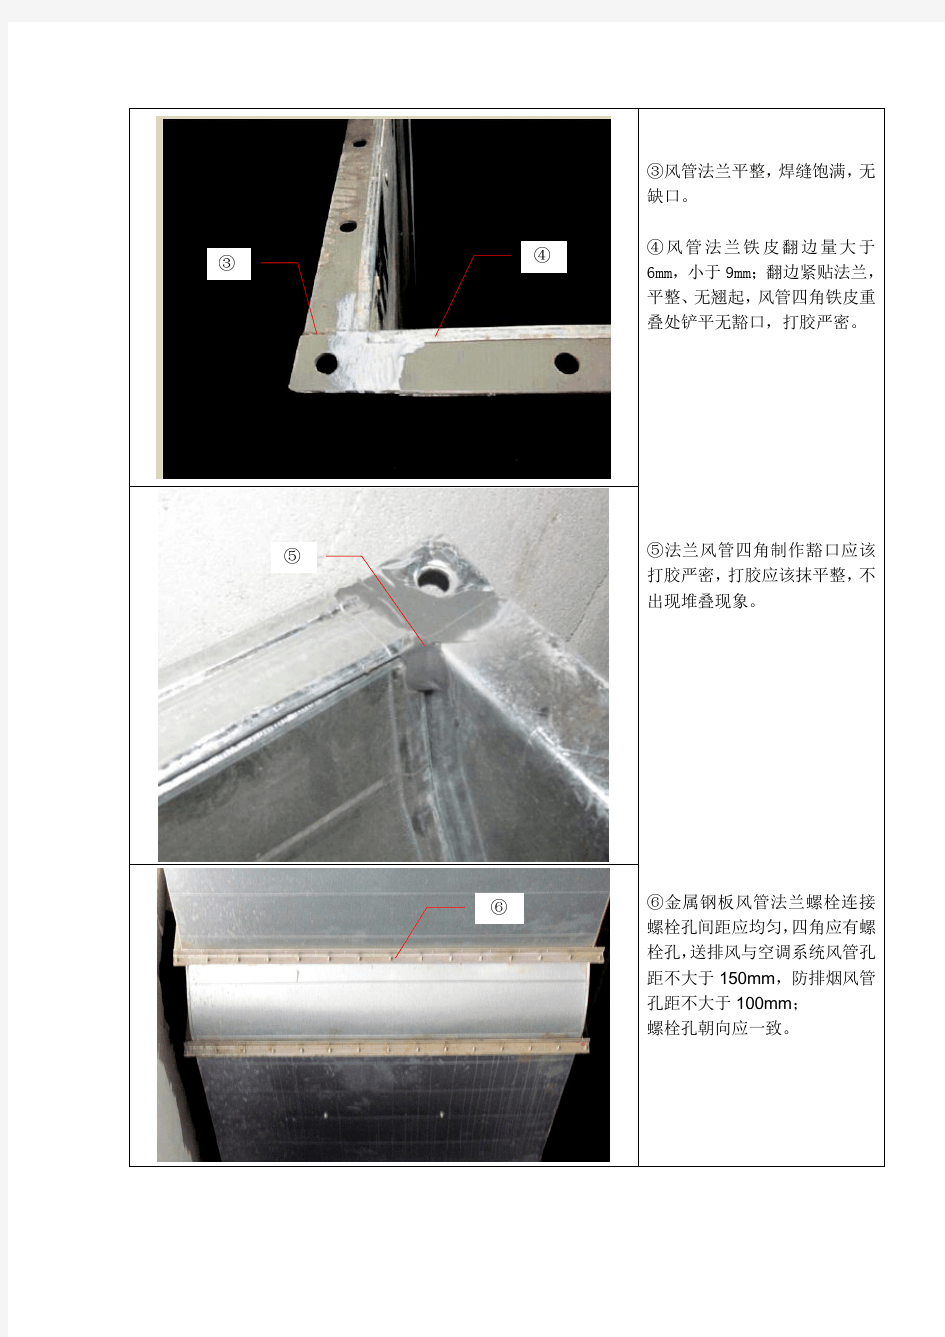 2.镀锌铁皮风管(角钢法兰、共板法兰)制作与安装工艺标准